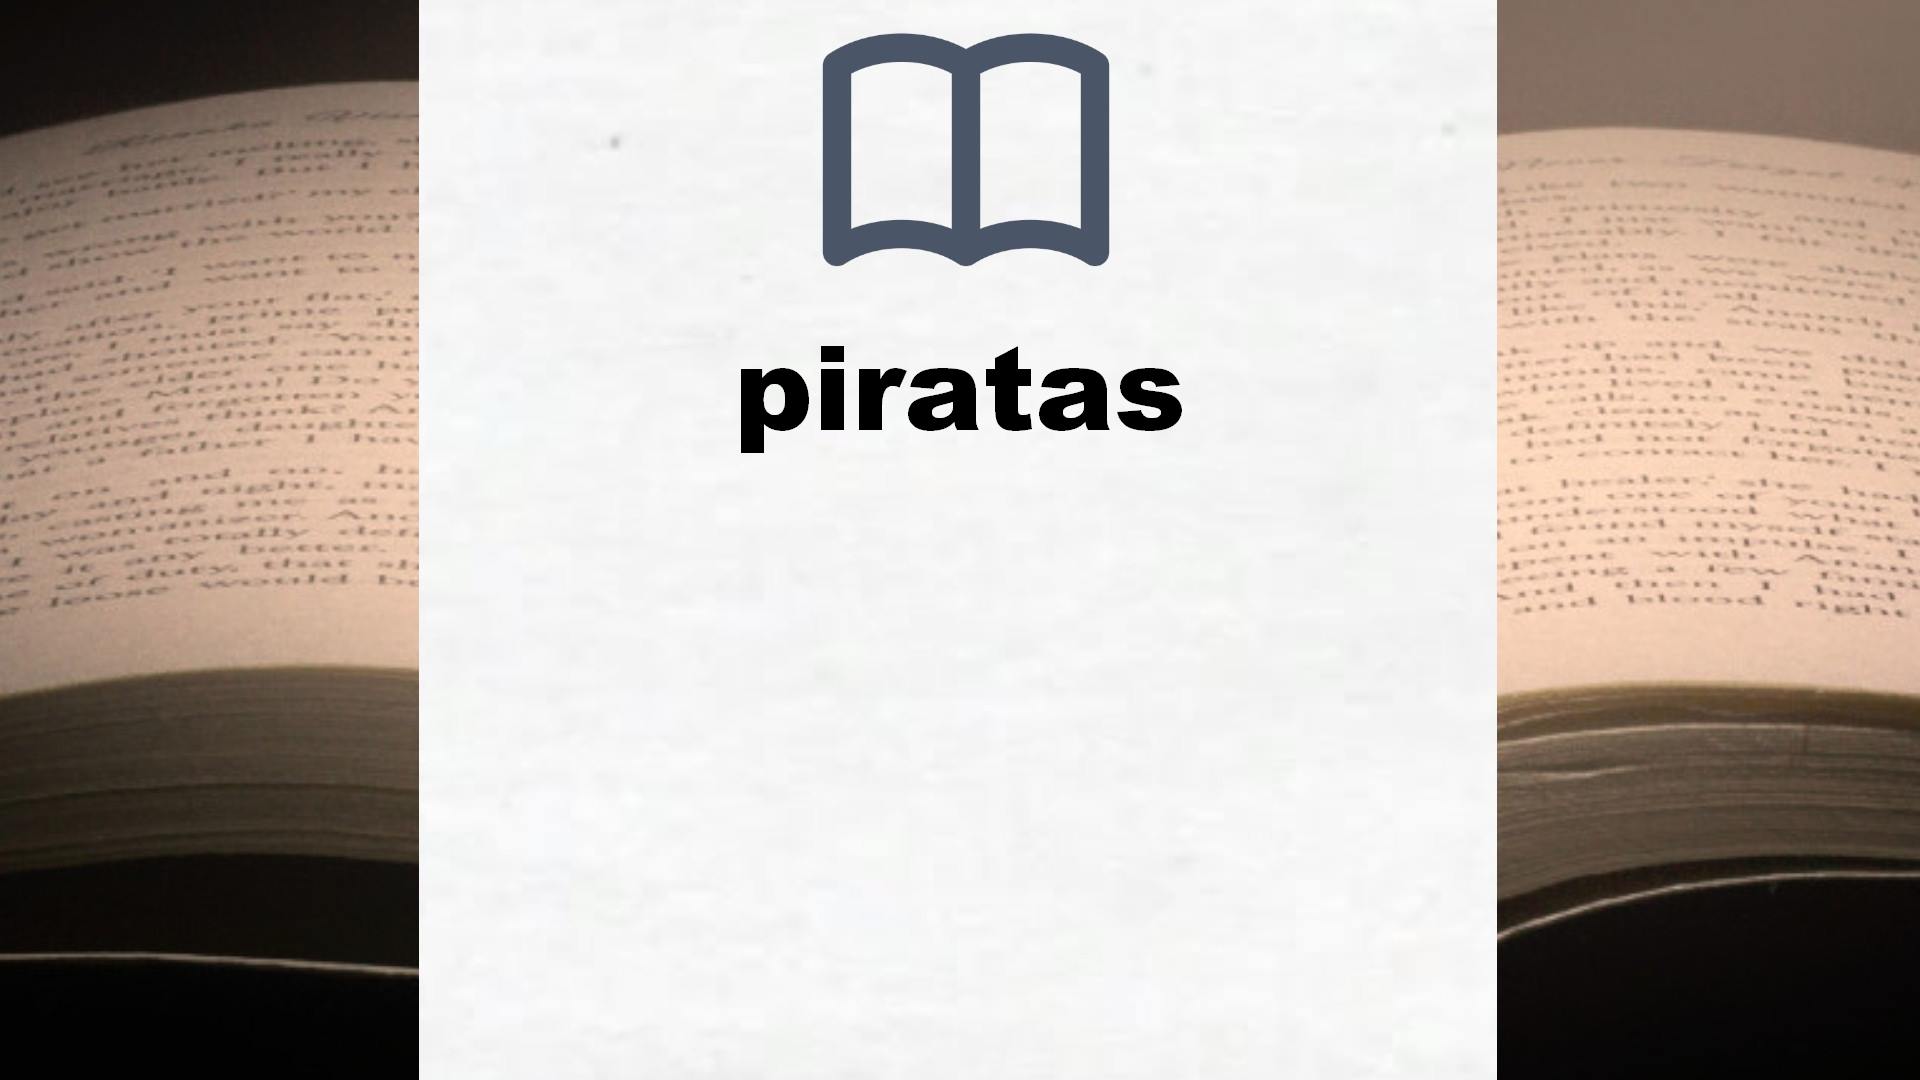 Libros sobre piratas